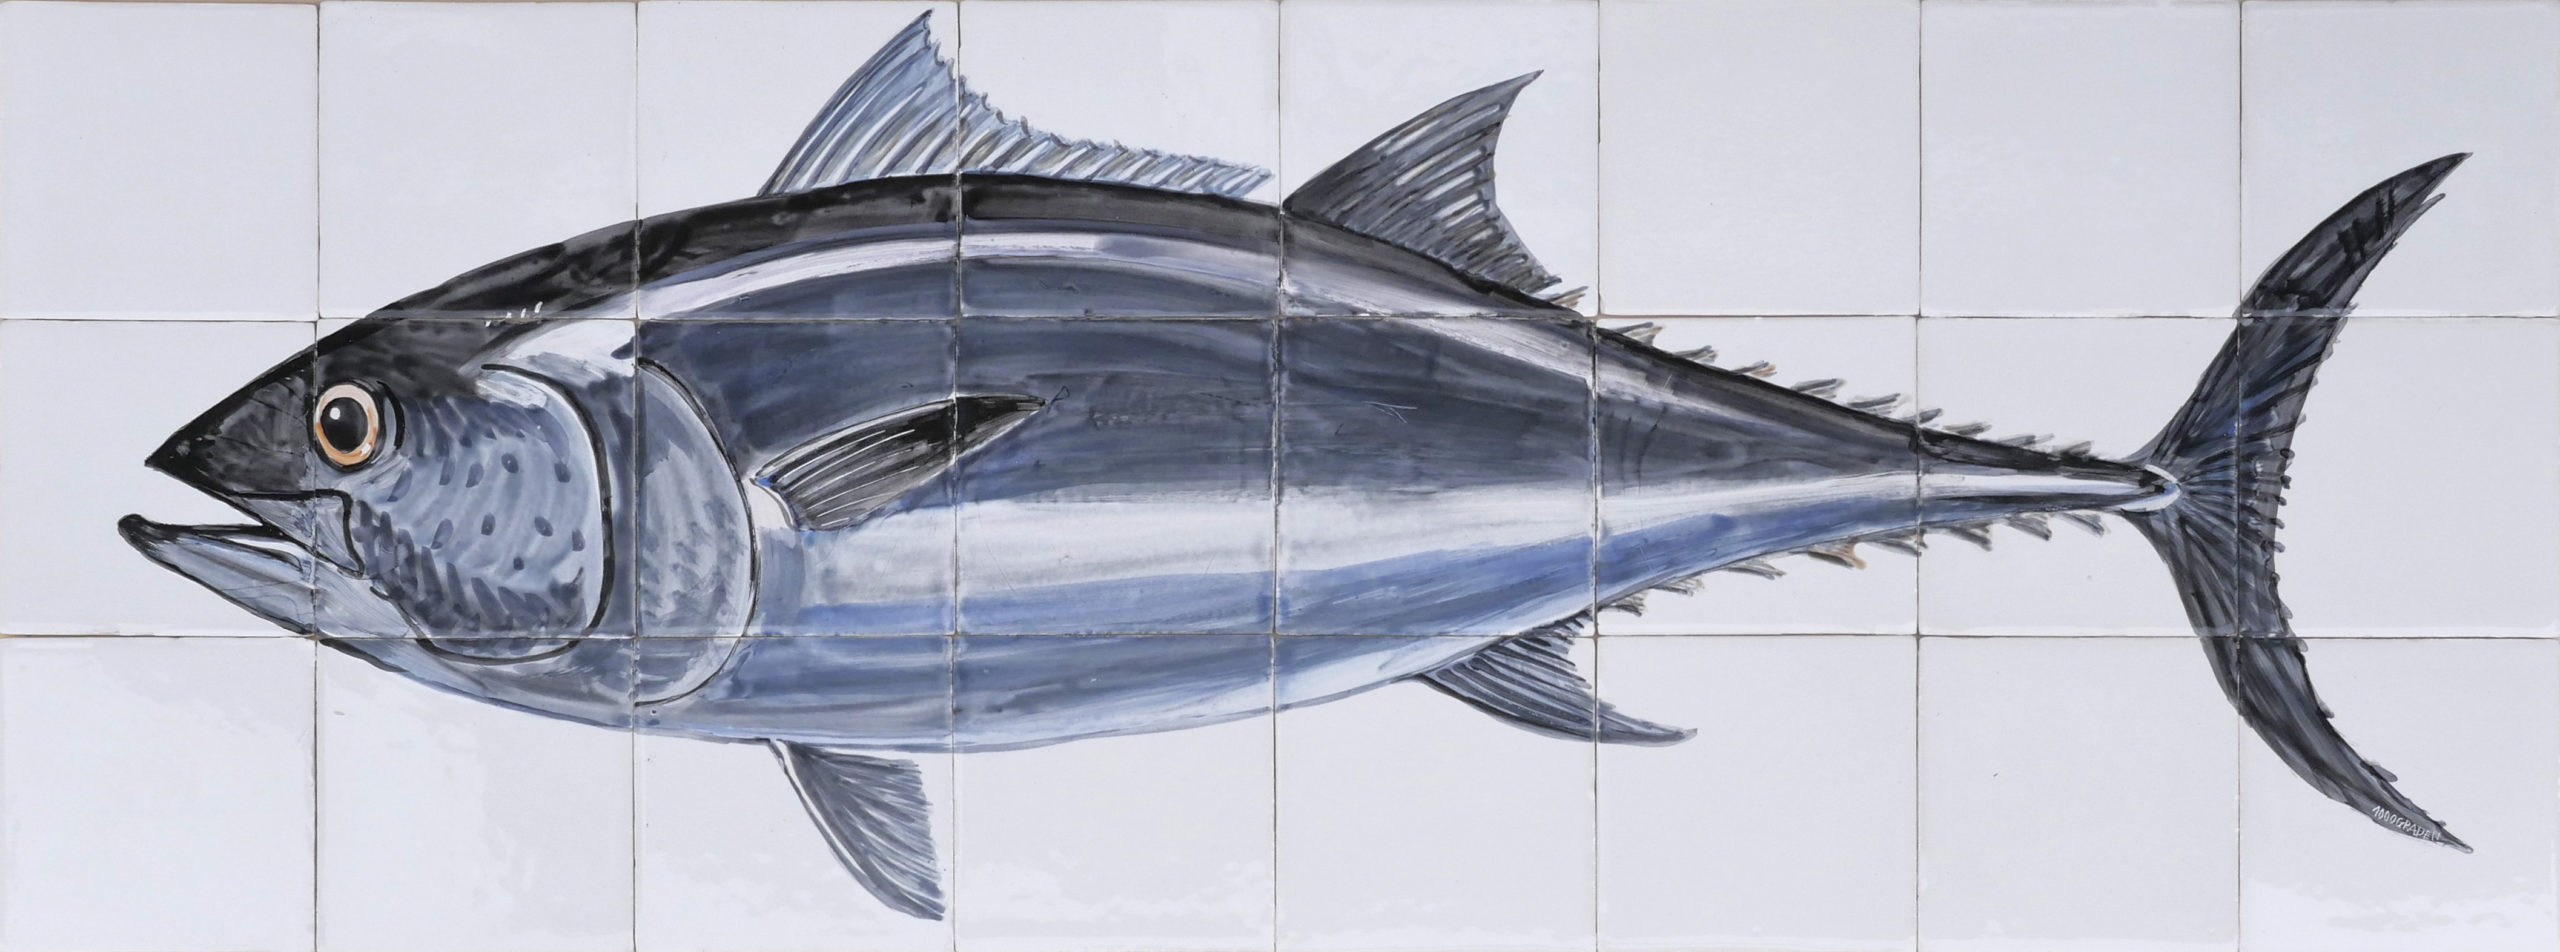 tegeltableau met tonijn